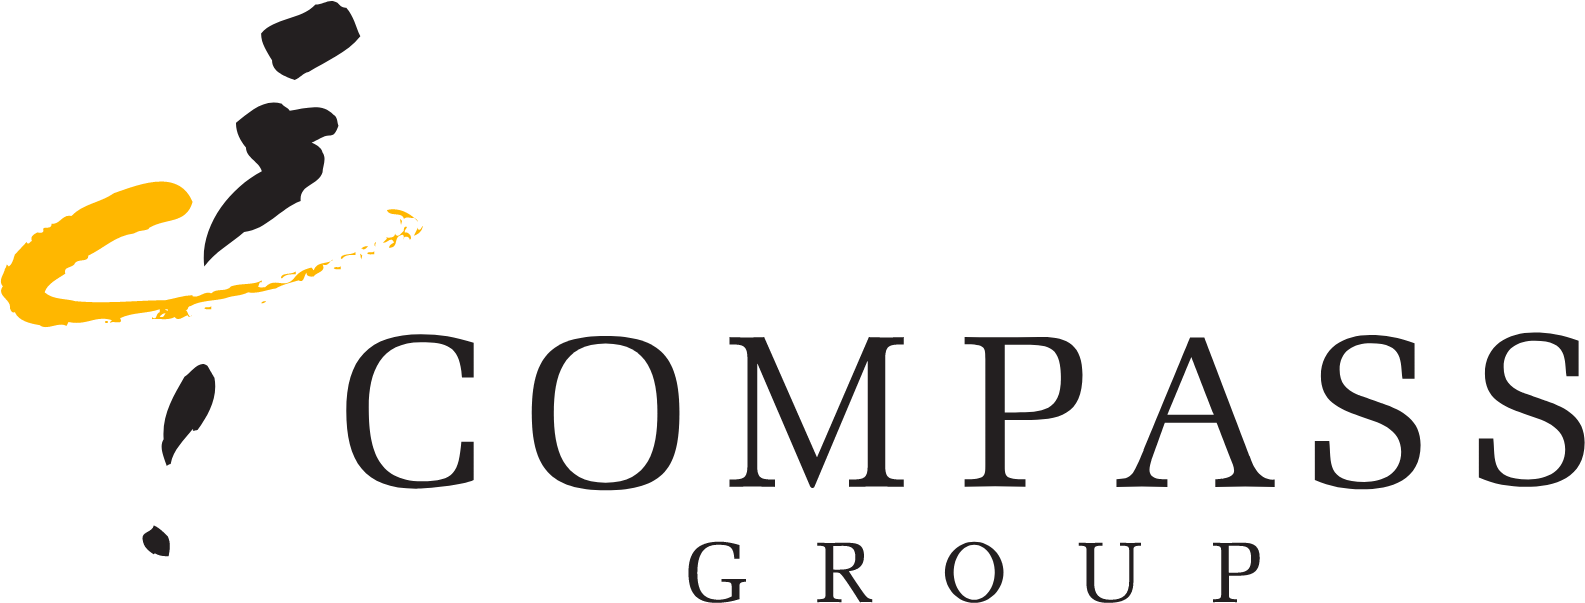 Compass Group logo large (transparent PNG)